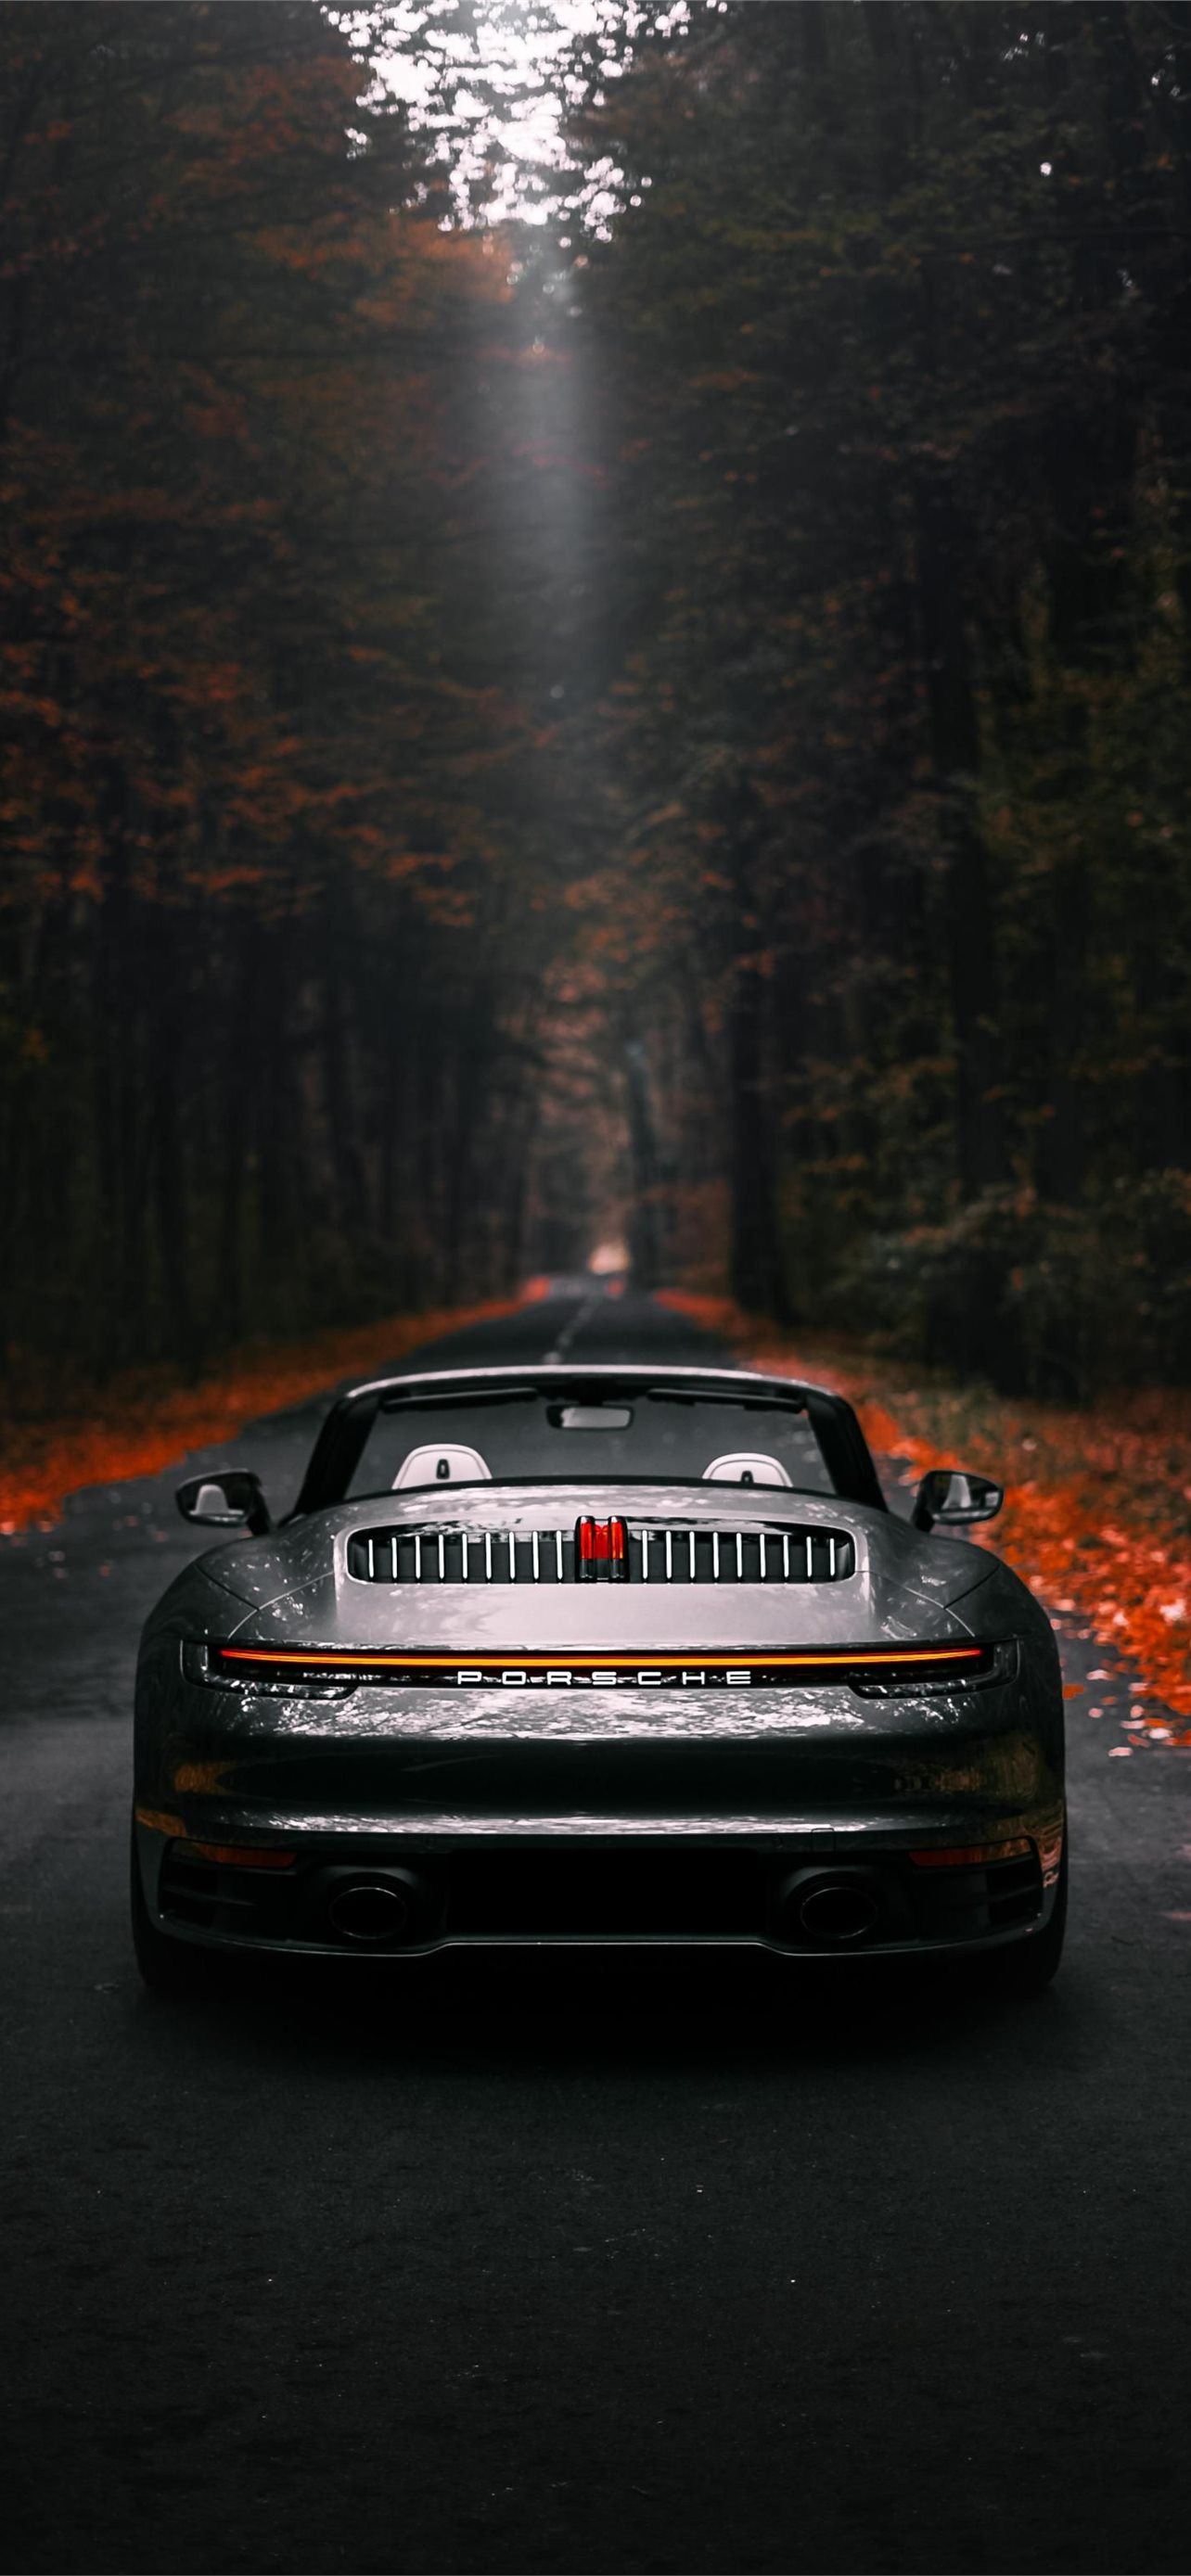 Nếu bạn yêu thích Porsche 911 Cabriolet, chắc chắn bạn sẽ không muốn bỏ qua các hình nền iPhone độc đáo, rực rỡ mà chúng tôi đã chuẩn bị cho bạn! Tận hưởng chiếc xe đỉnh cao này trên màn hình điện thoại của bạn với những hình ảnh đẹp như tranh vẽ.